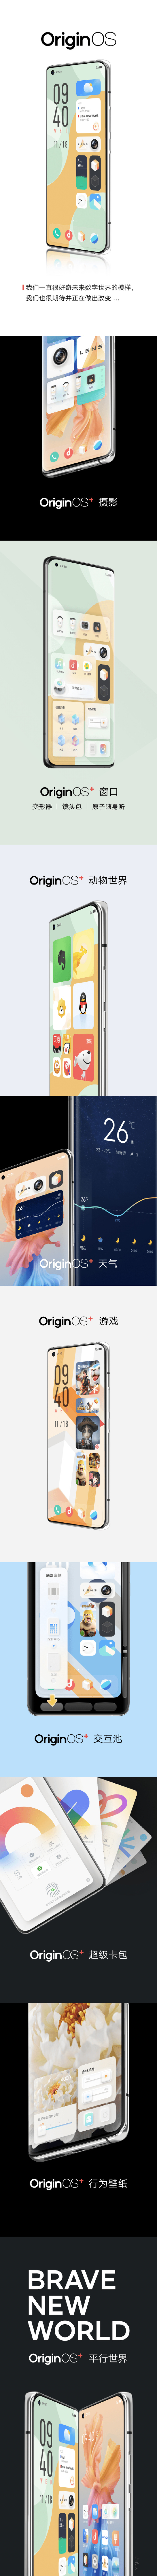 vivo全新操作系统发布 OriginOS惊艳亮相